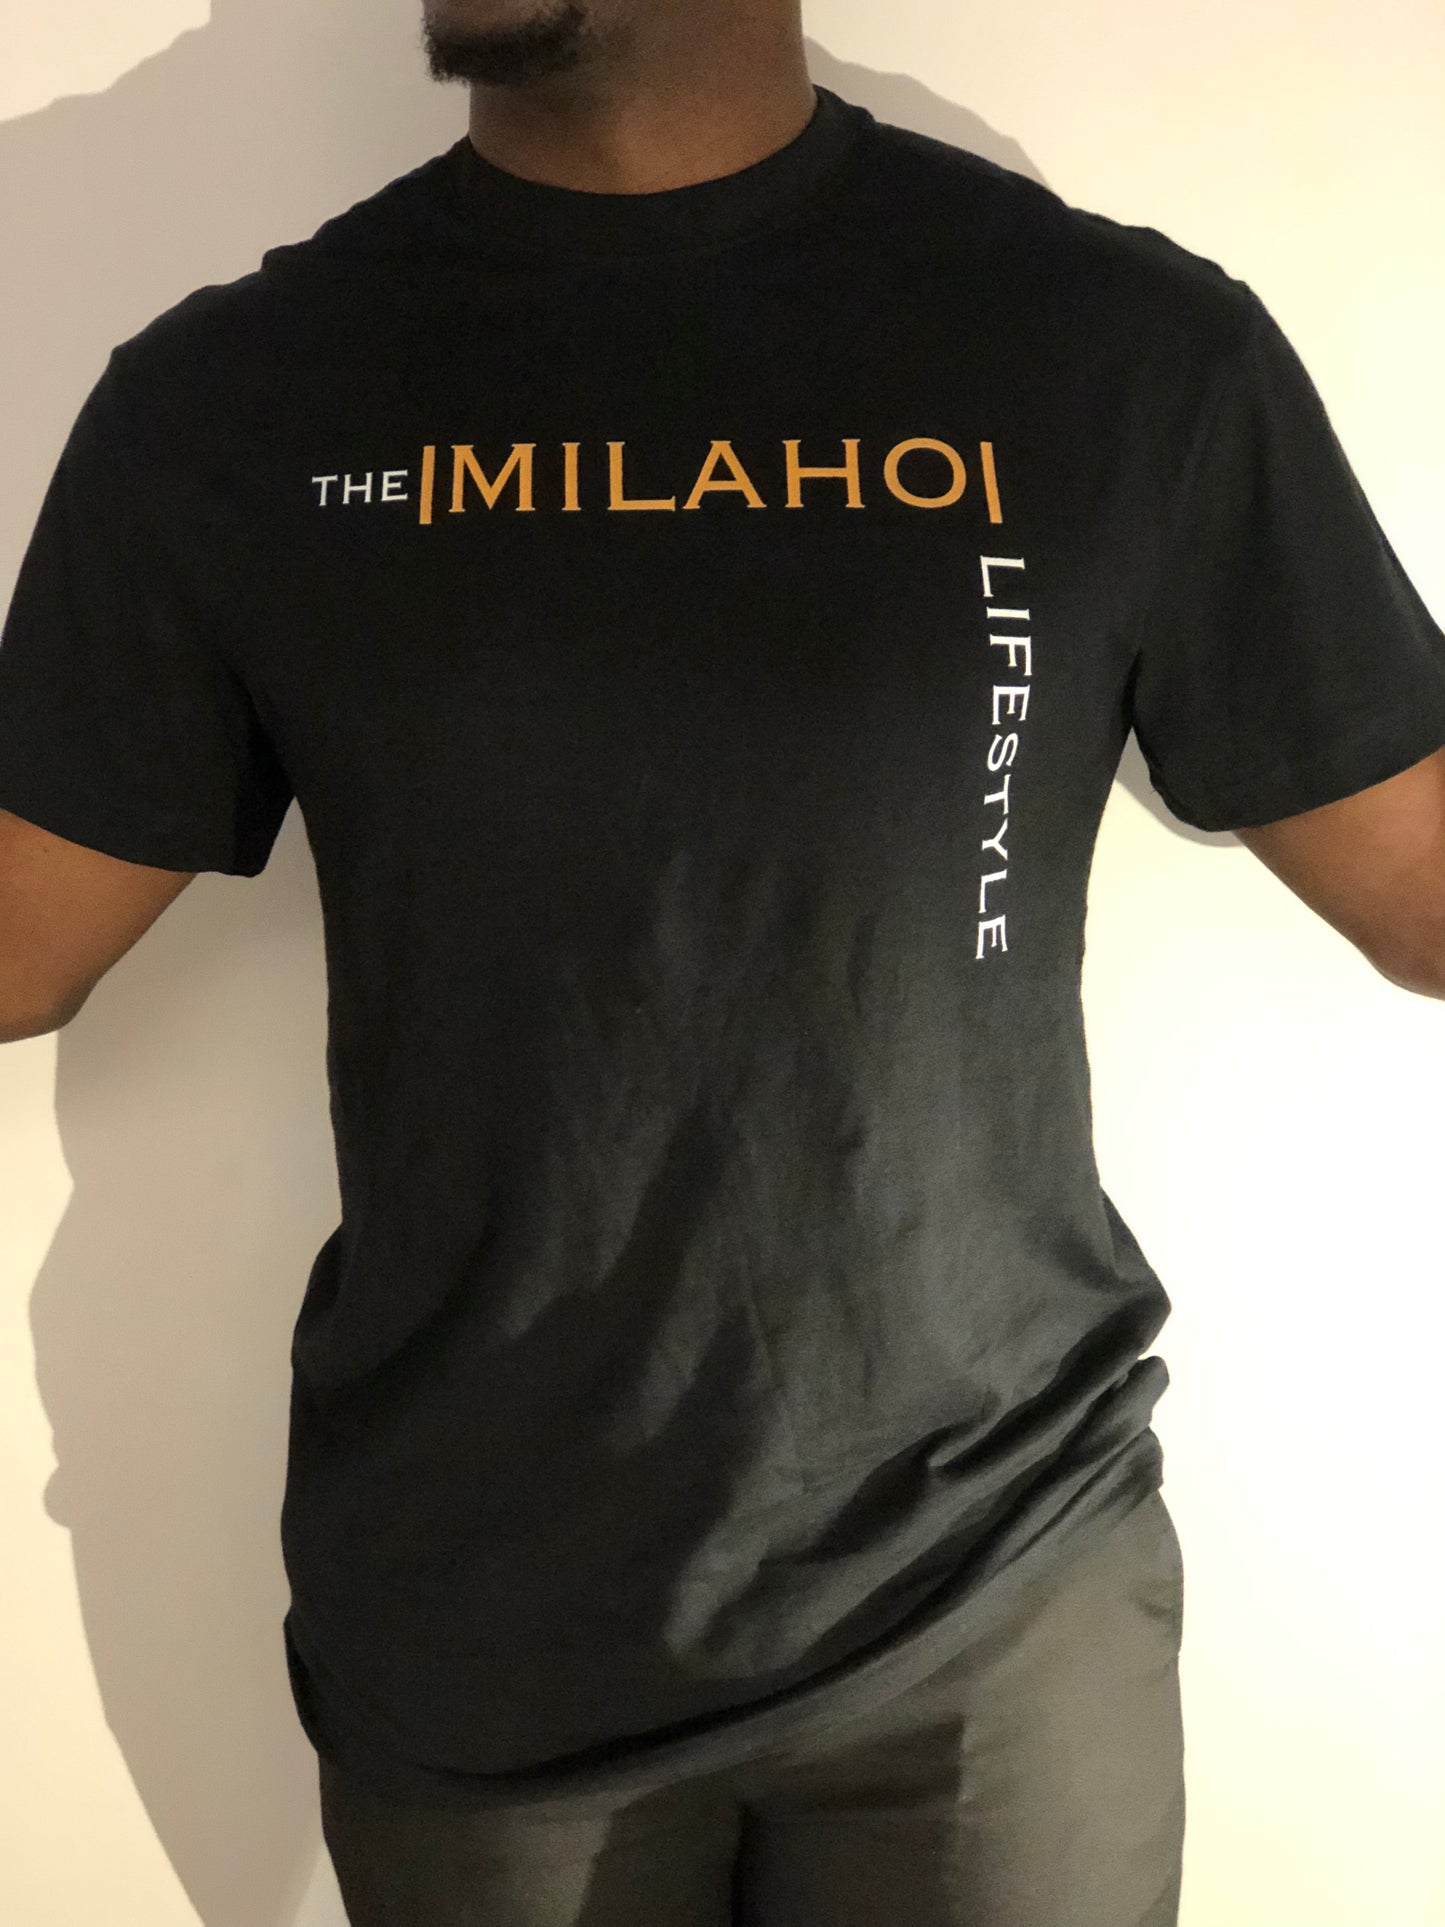 The MILAHO Lifestyle T-Shirt Black (Oversized)